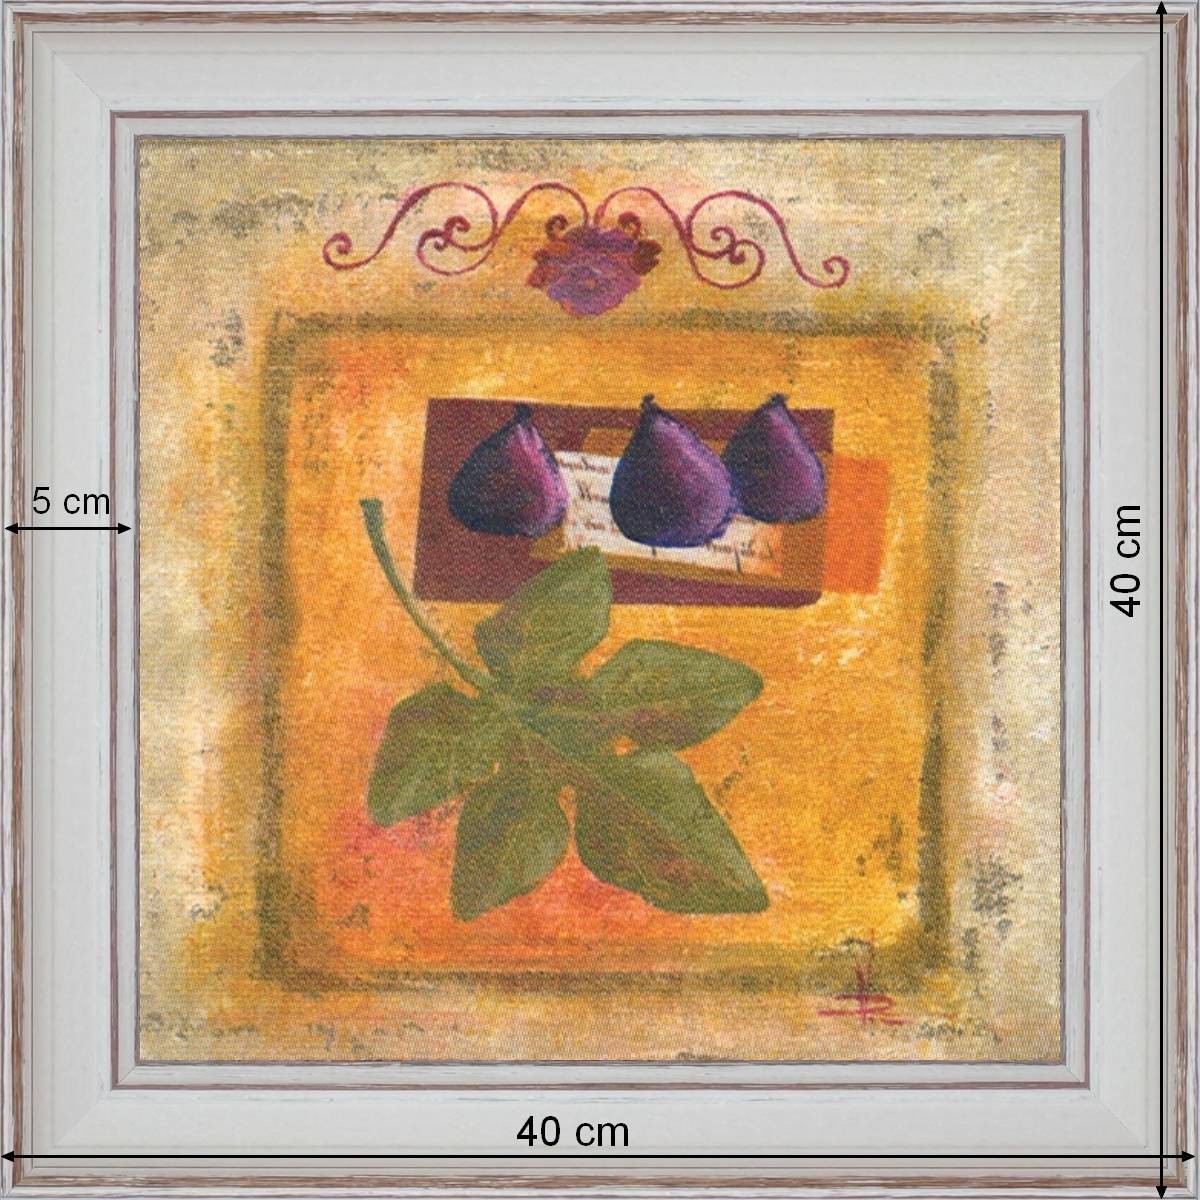 Les figues violettes - dimensions 40 x 40 cm